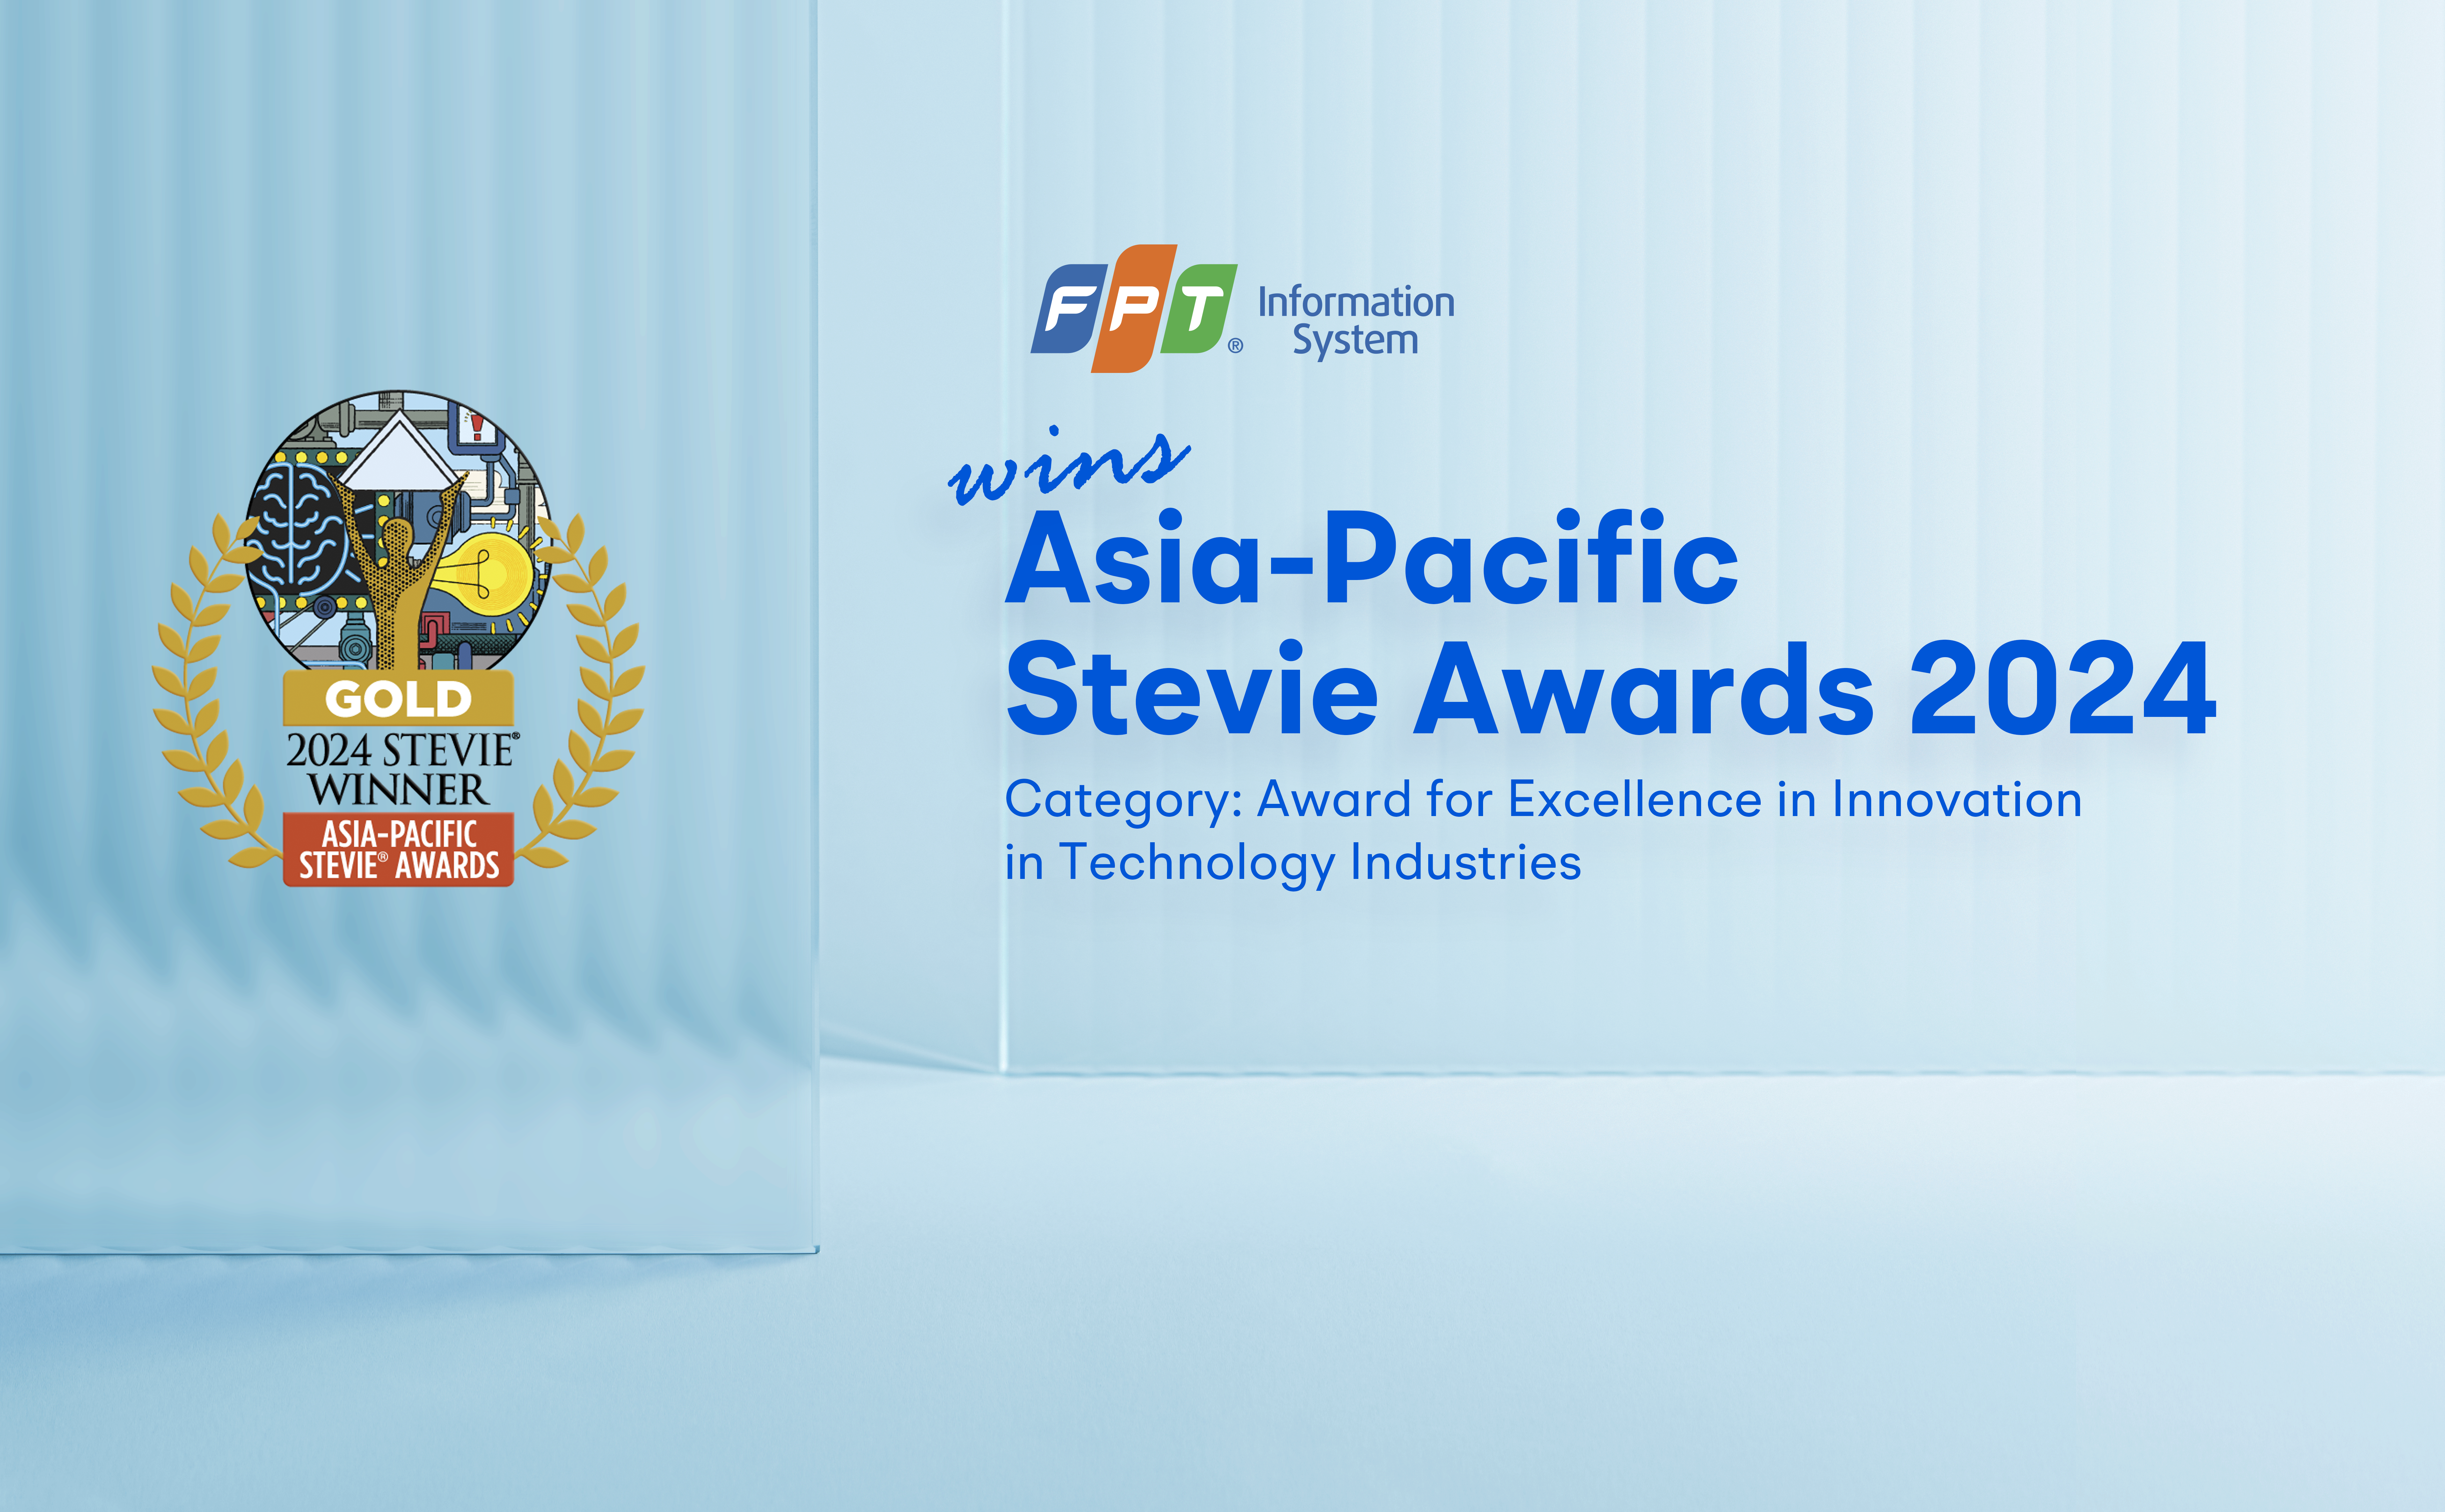 Giải Vàng – Giải thưởng Stevie Awards Châu Á – Thái Bình Dương 2024 (Asia-Pacific Stevie Awards)